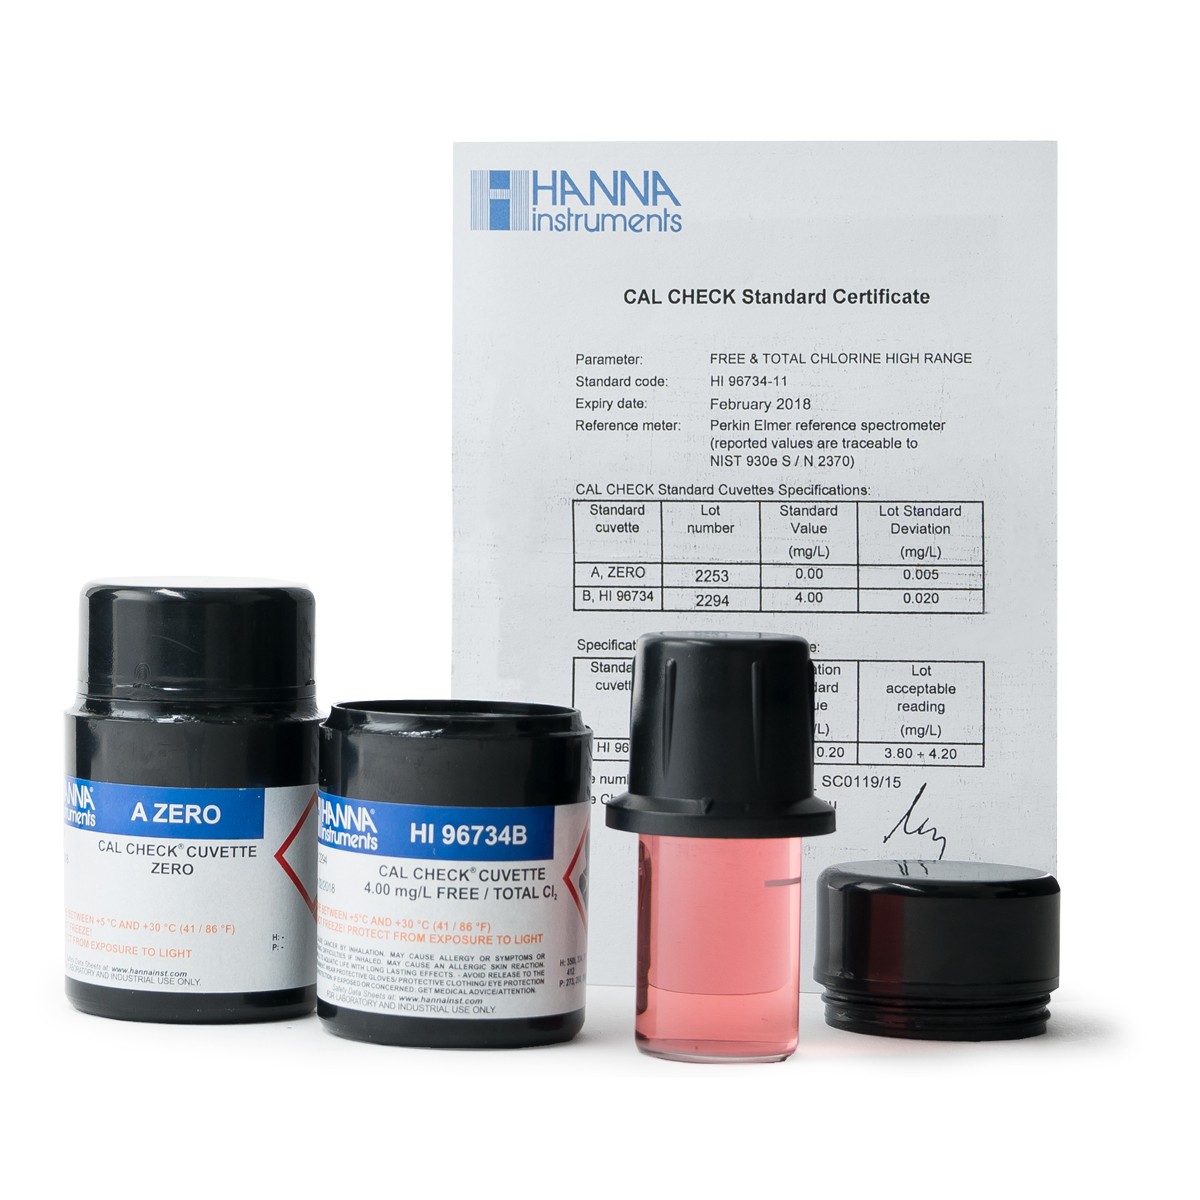 Cal Check chuẩn Clo dư HANNA HI96701-11 (0.00 - 5.00 mg/L (ppm))